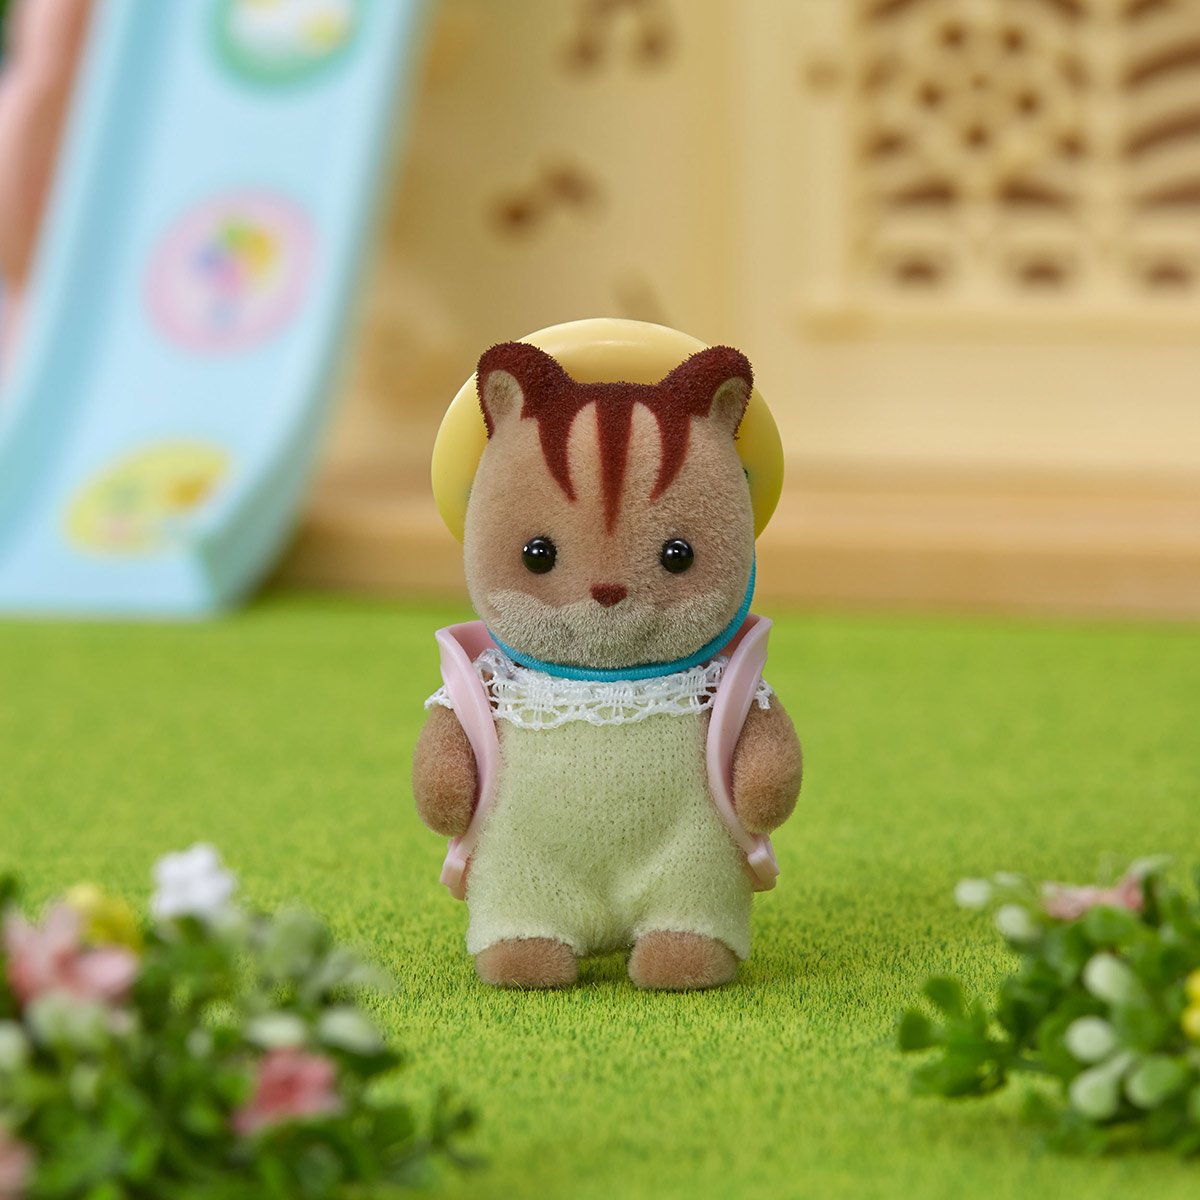 Mini-univers bébé écureuil roux 5065 SYLVANIAN FAMILIES : le jouet